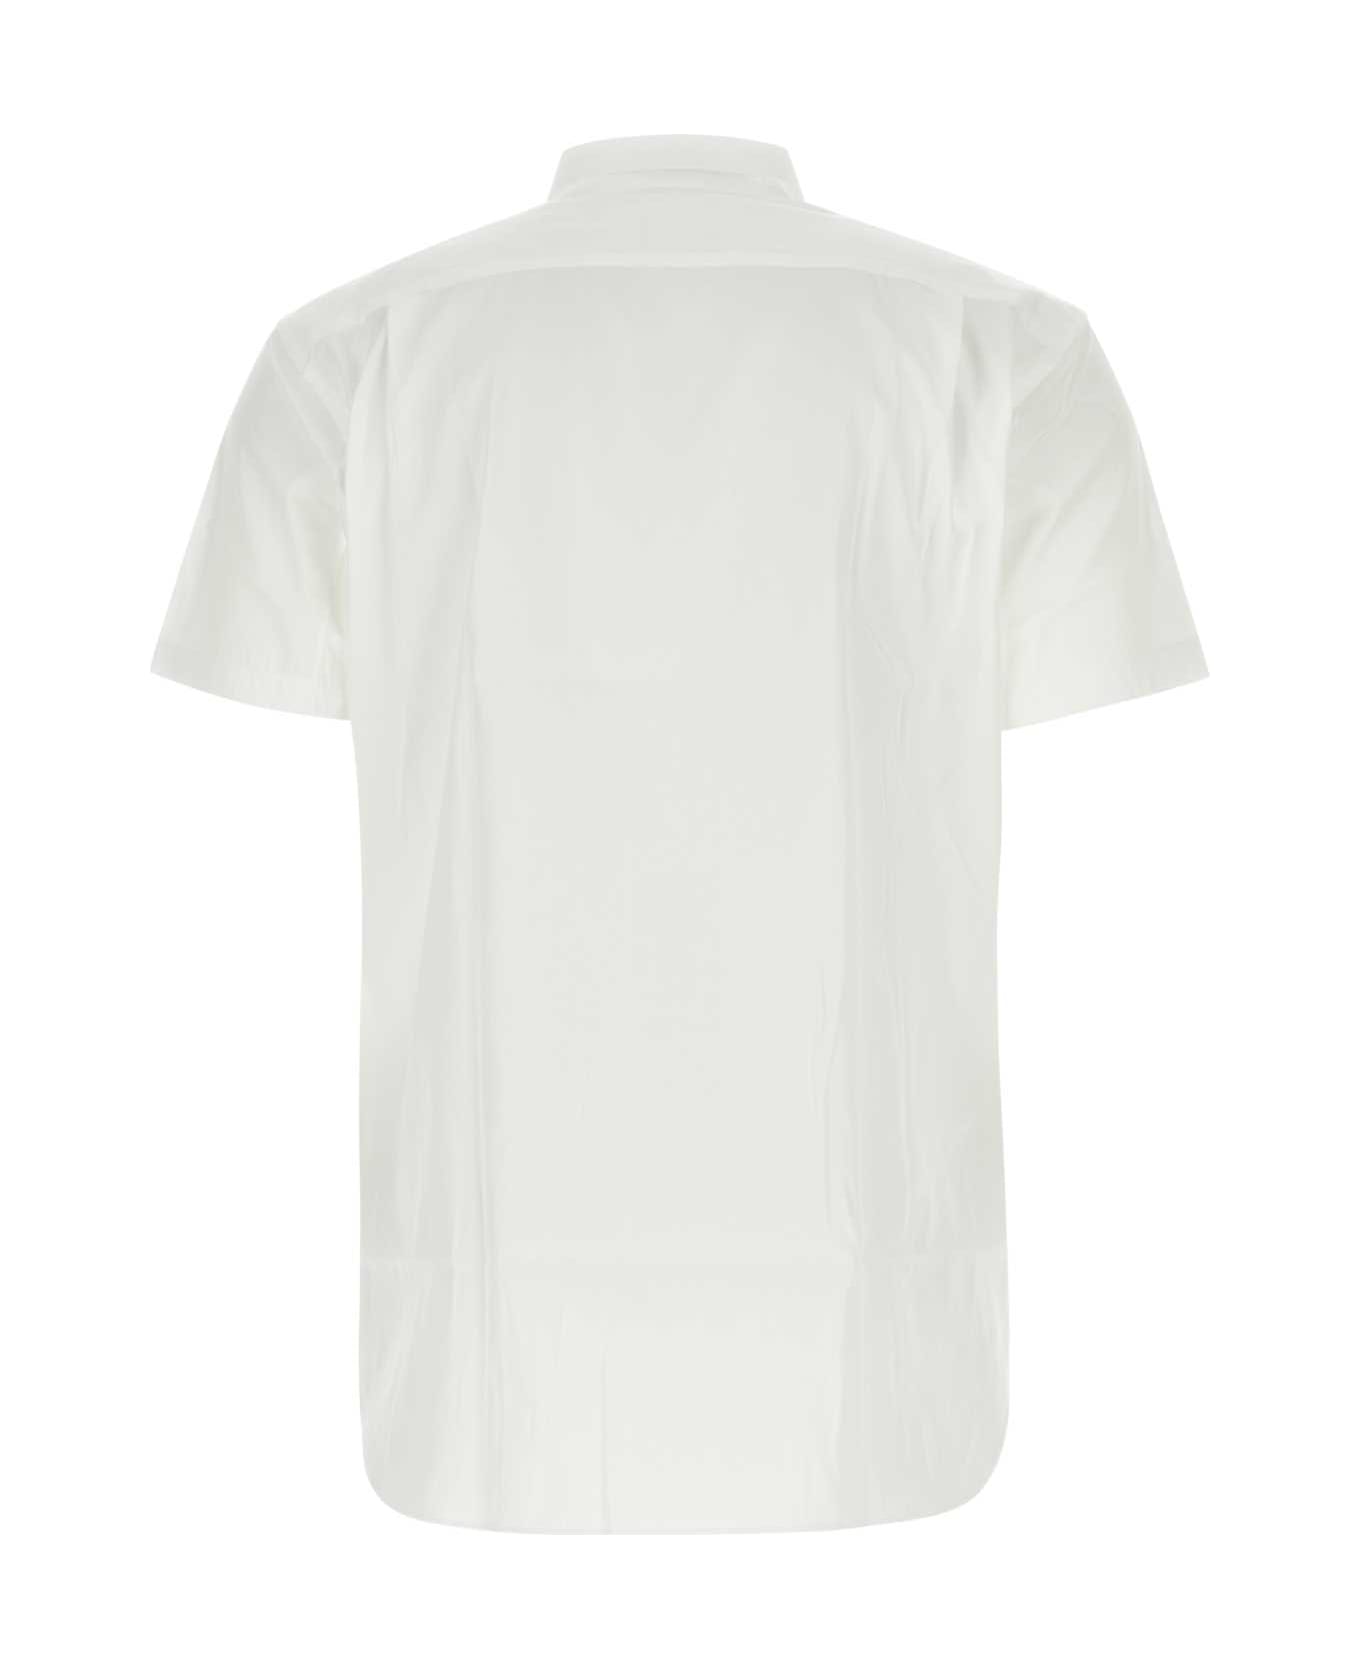 Comme des Garçons Shirt White Poplin Shirt - Multicolor